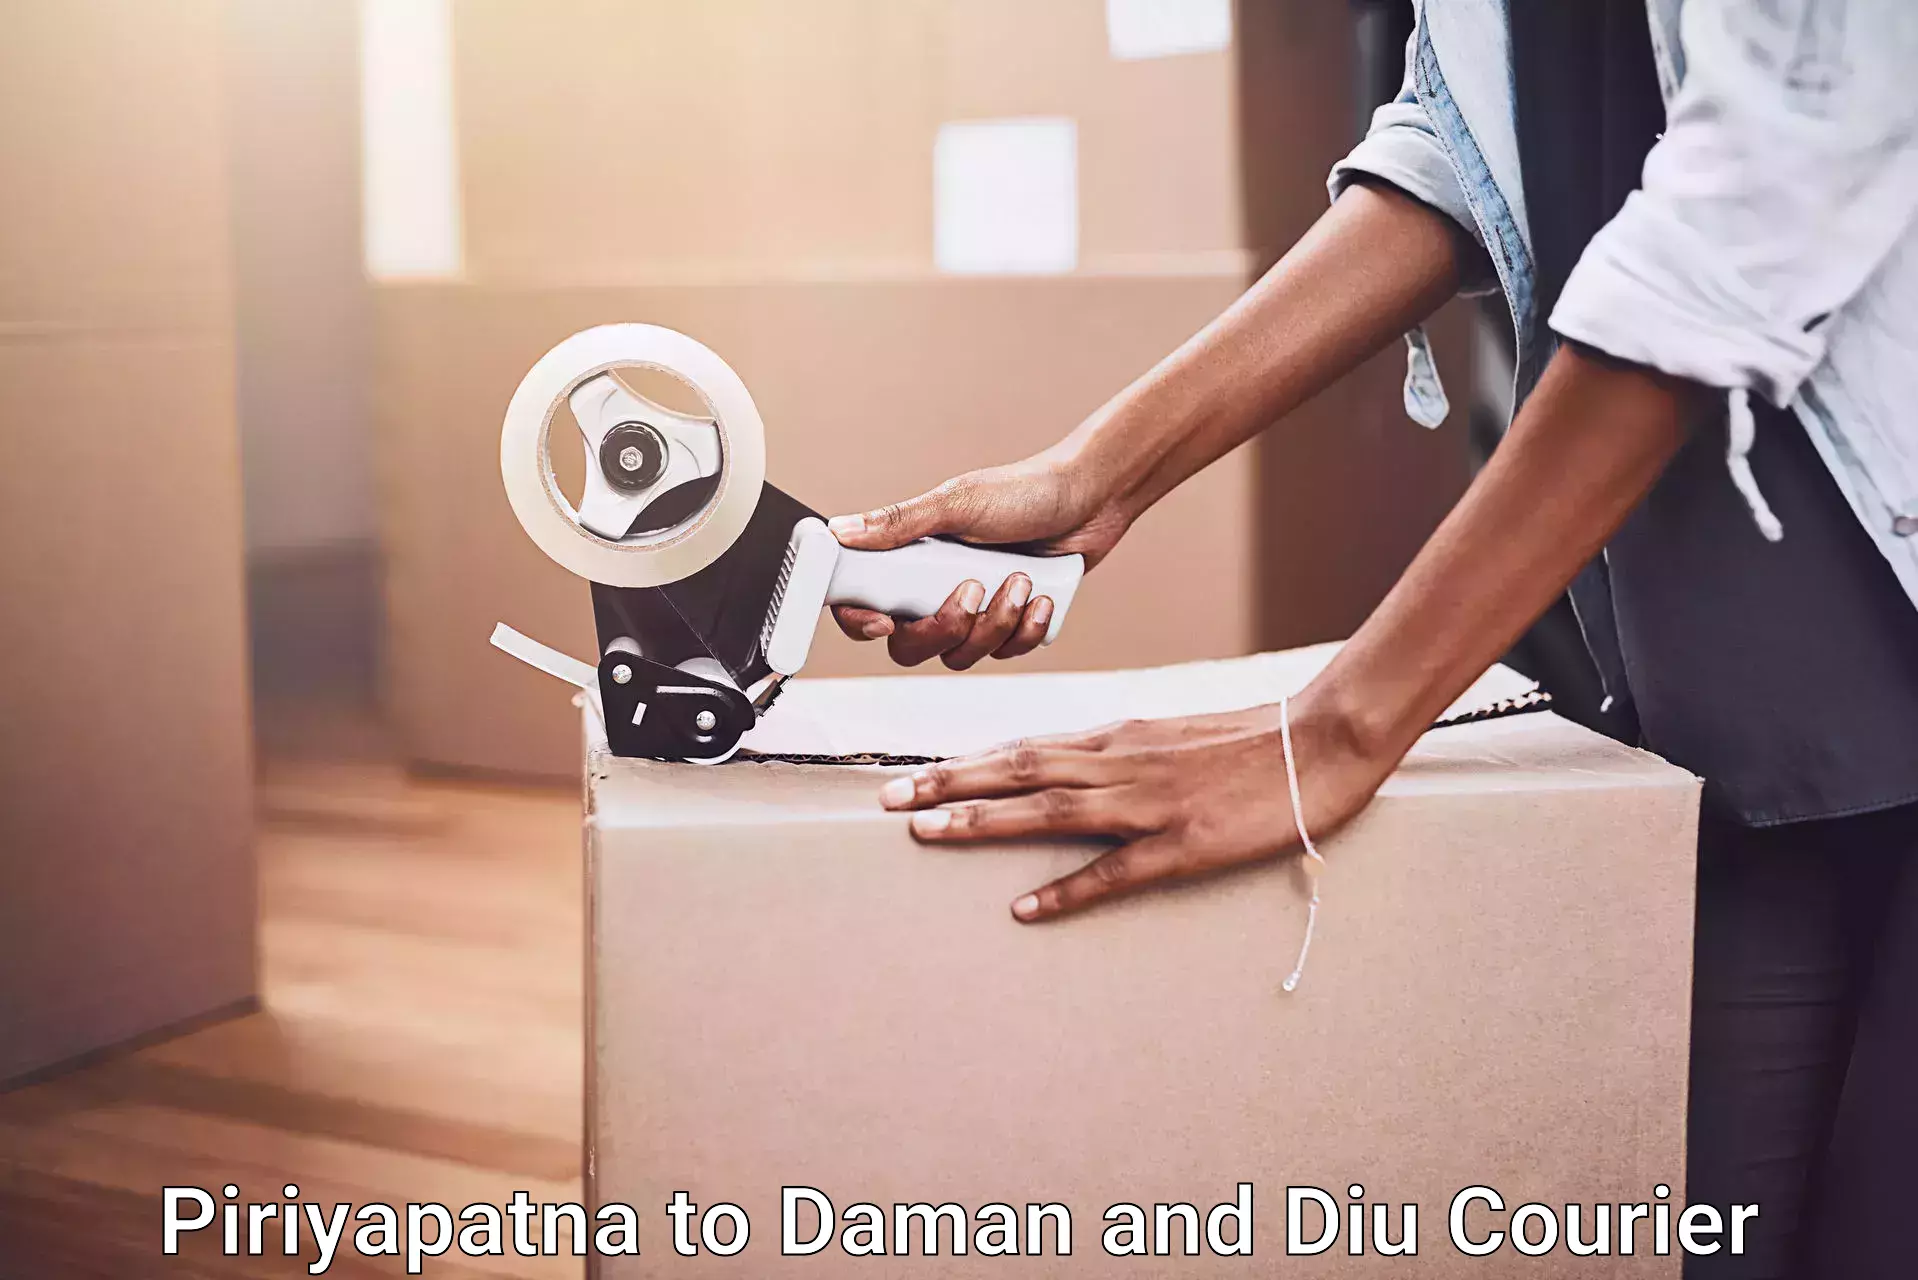 Expert furniture movers Piriyapatna to Daman and Diu